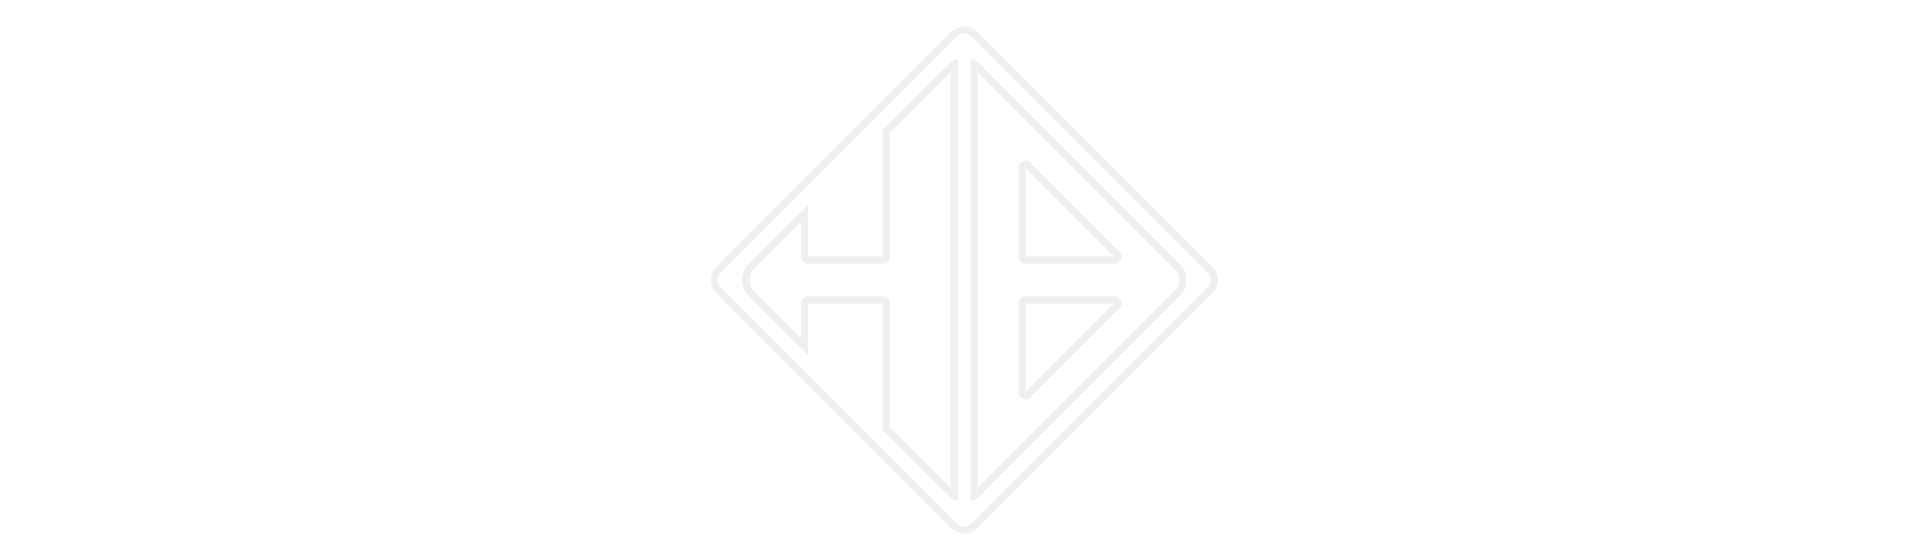 logo Honorin Beny un H et un B dans un losange